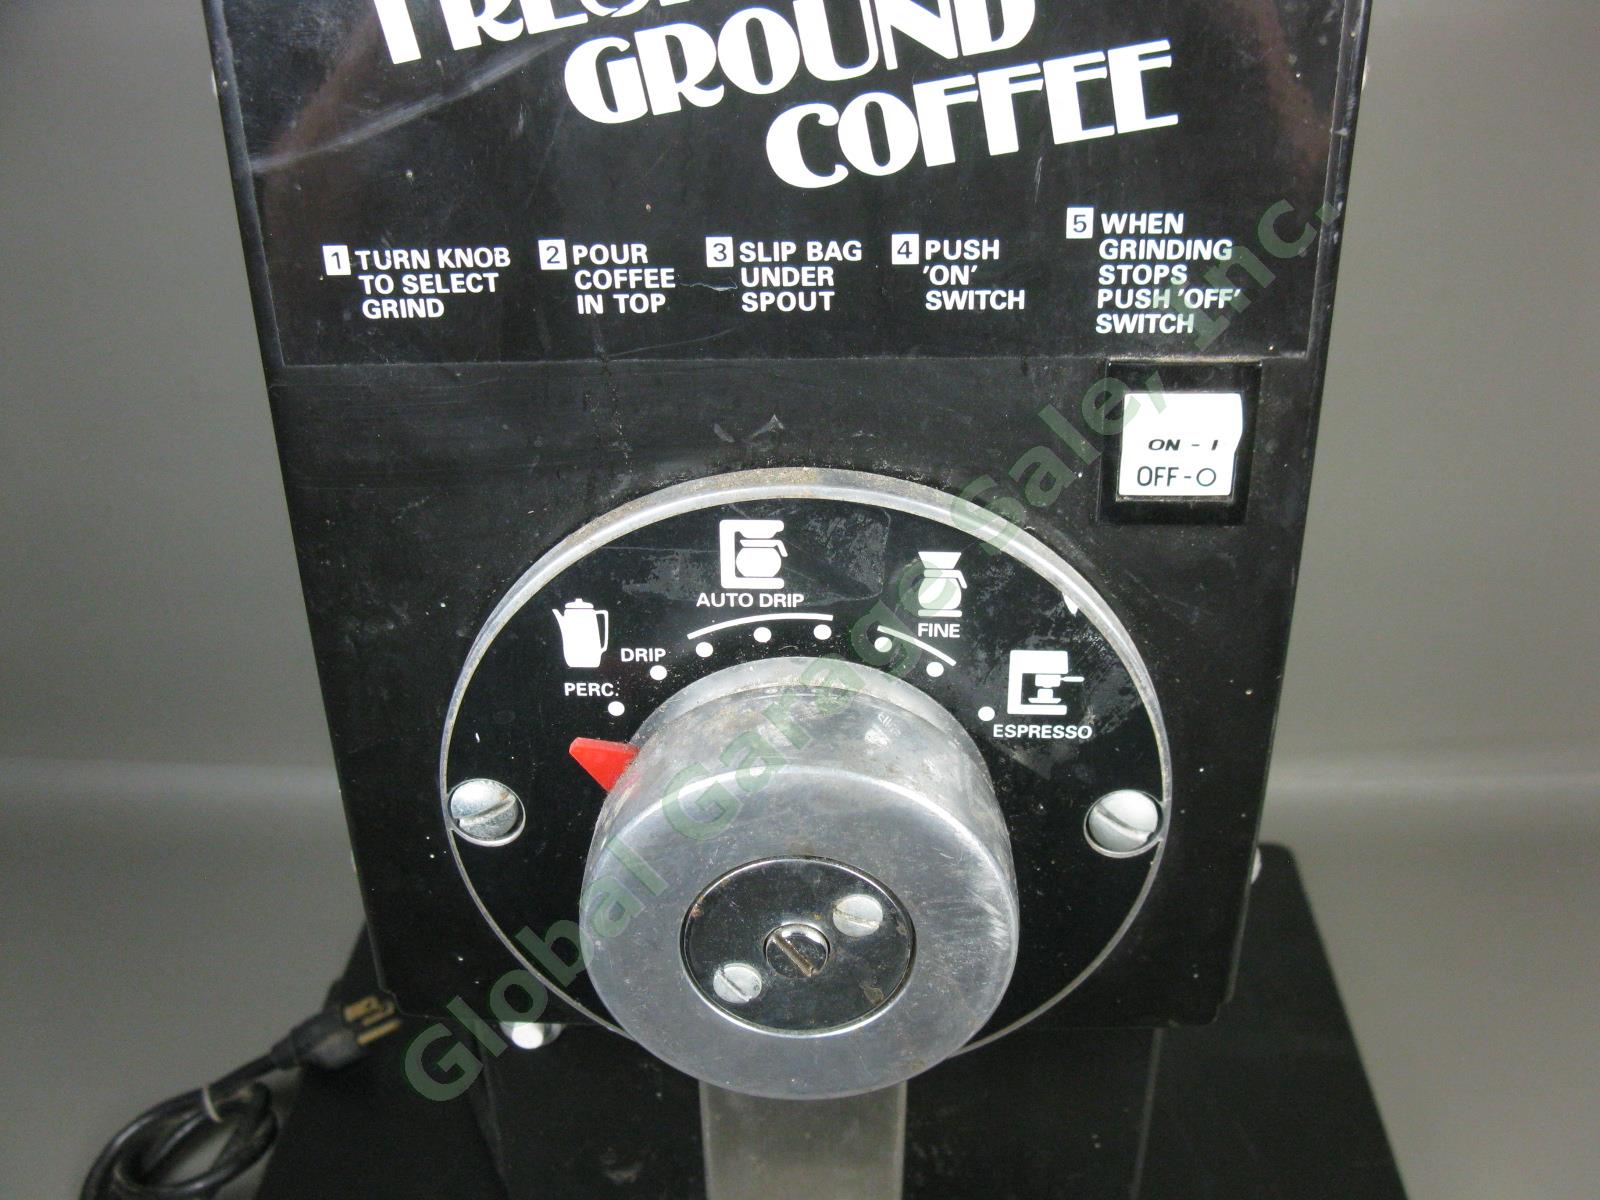 Grindmaster 810 Black ETL Slimline 1.5 lb 115V Coffee Bean Grinder Tested Works! 1